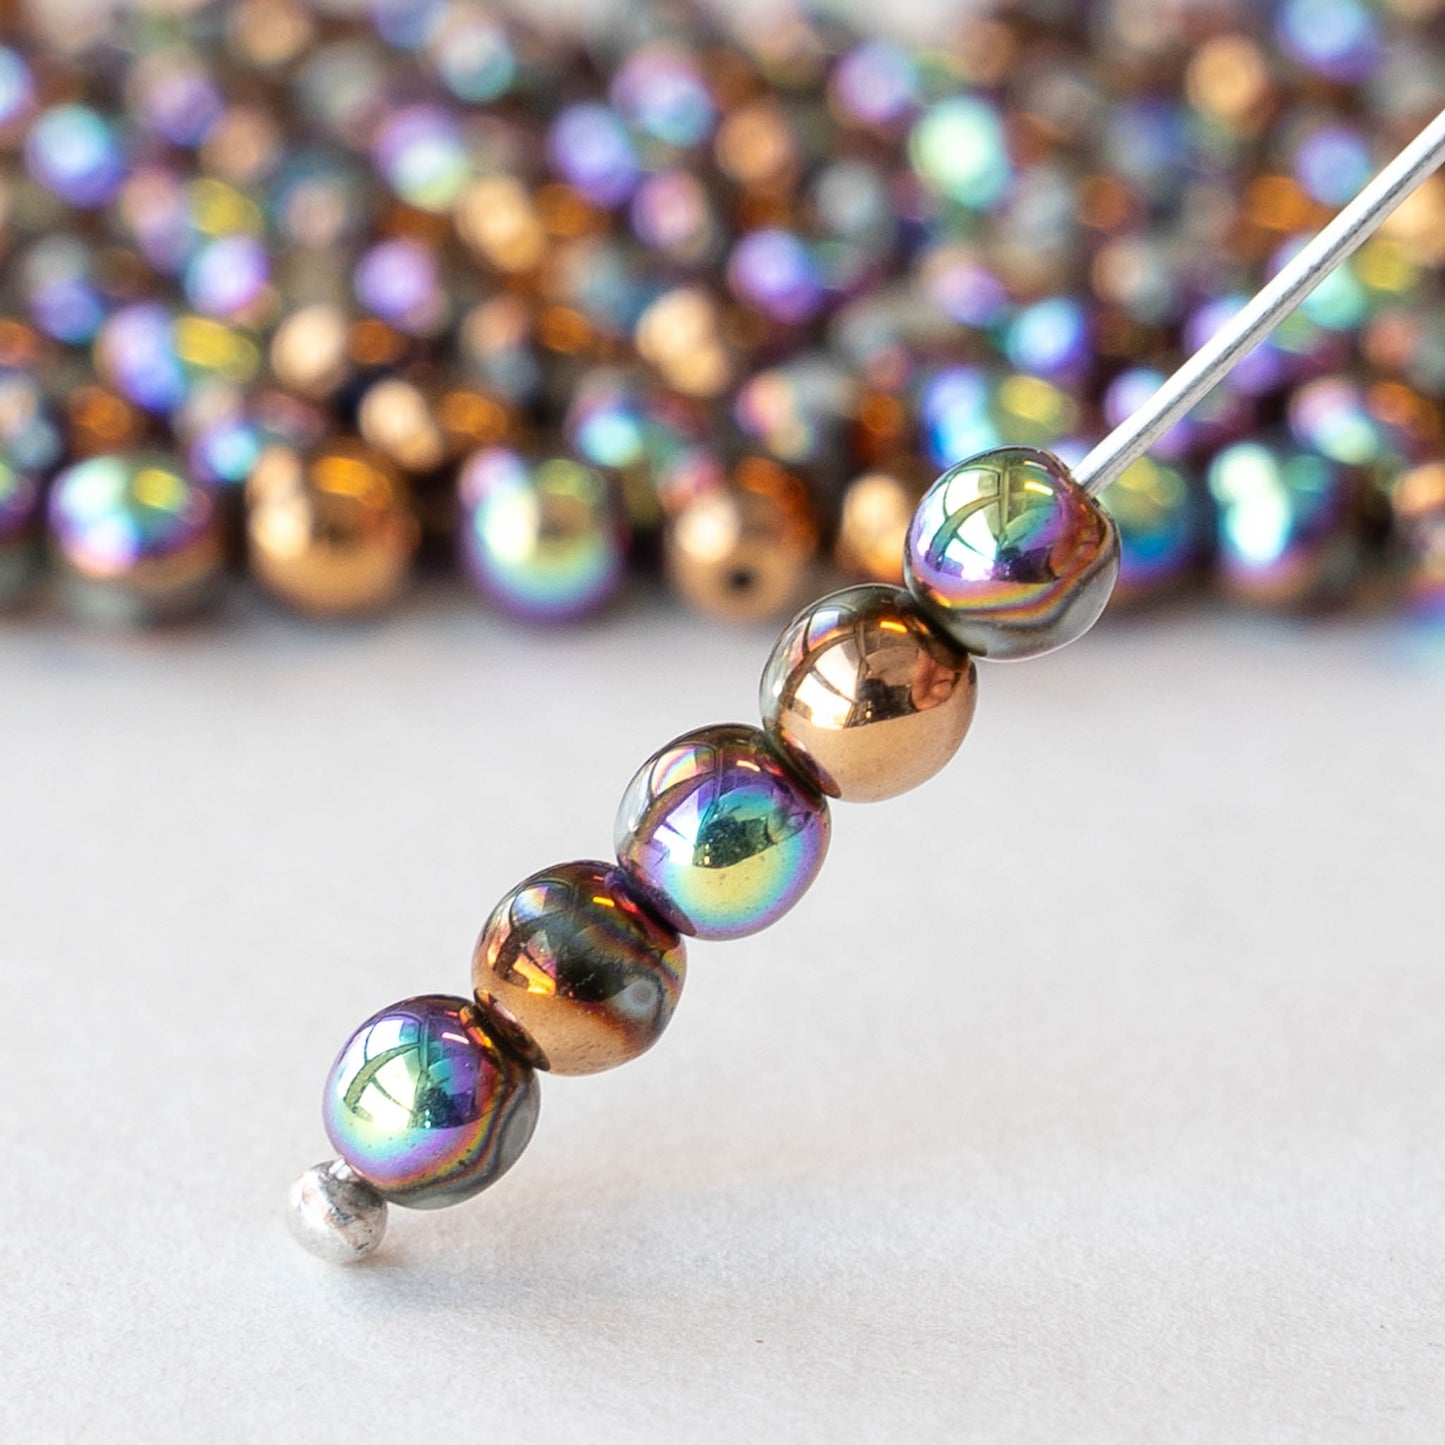 4mm Round Glass Beads - Metallic Bronze AB -  120 Beads